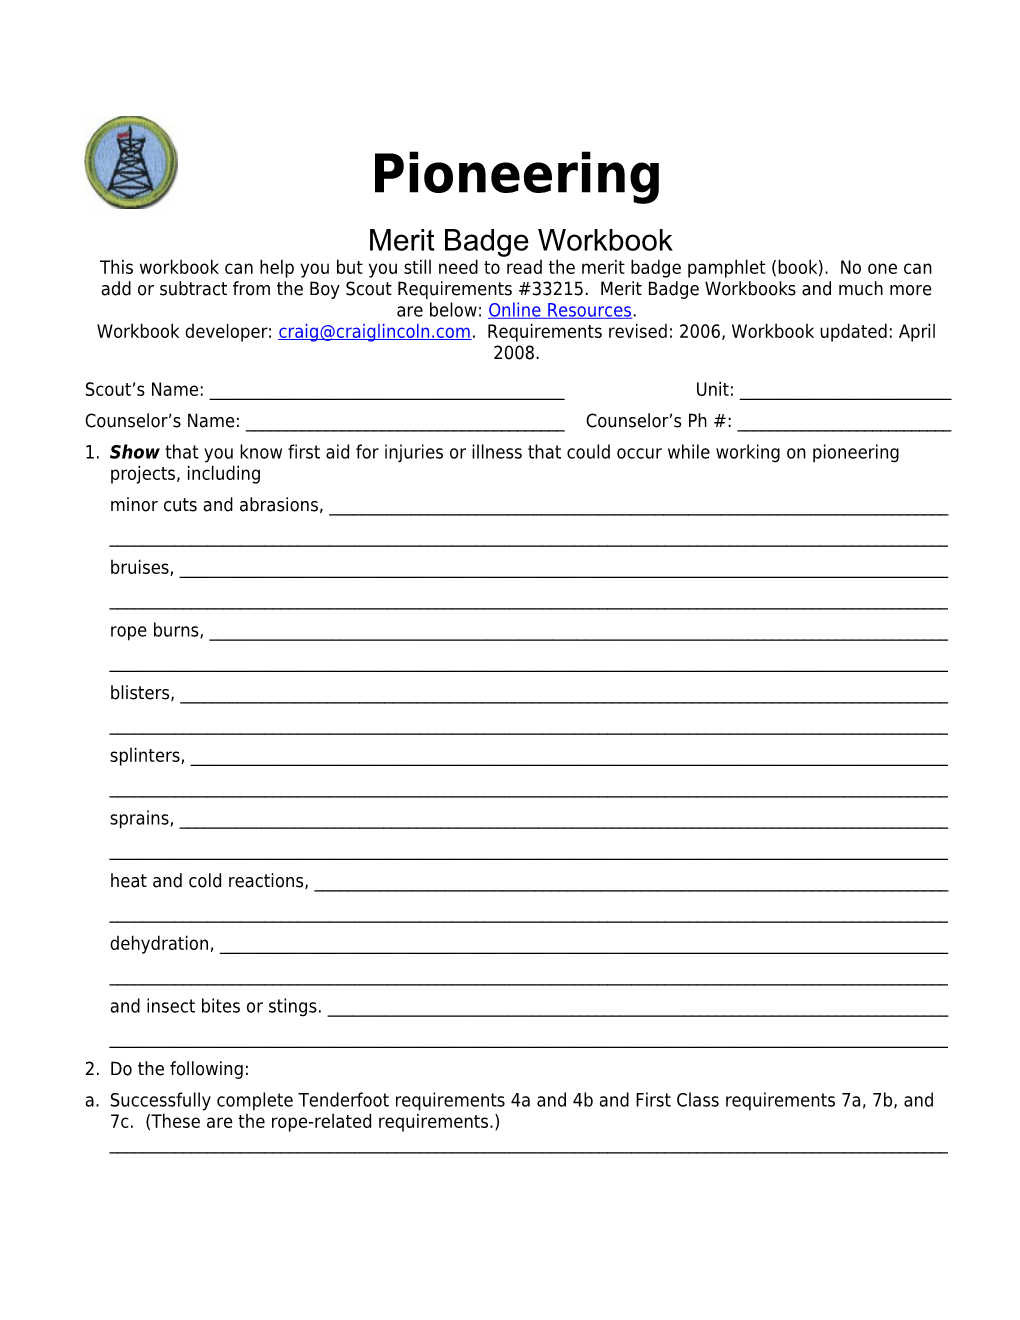 Pioneering P. 4 Merit Badge Workbook Scout's Name: ______